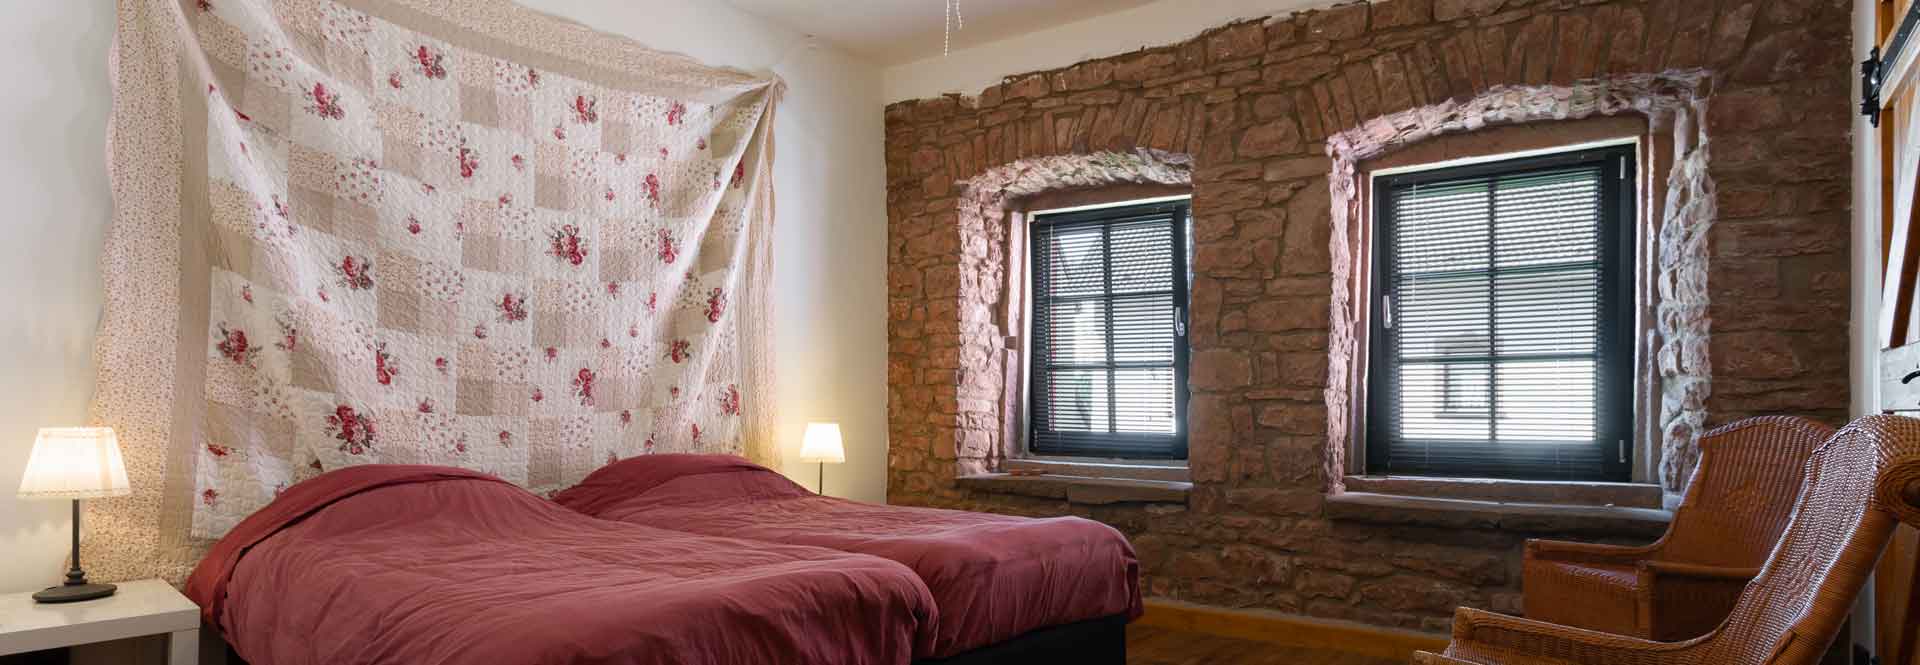 romantisches Schlafzimmer mit authentischen Wänden